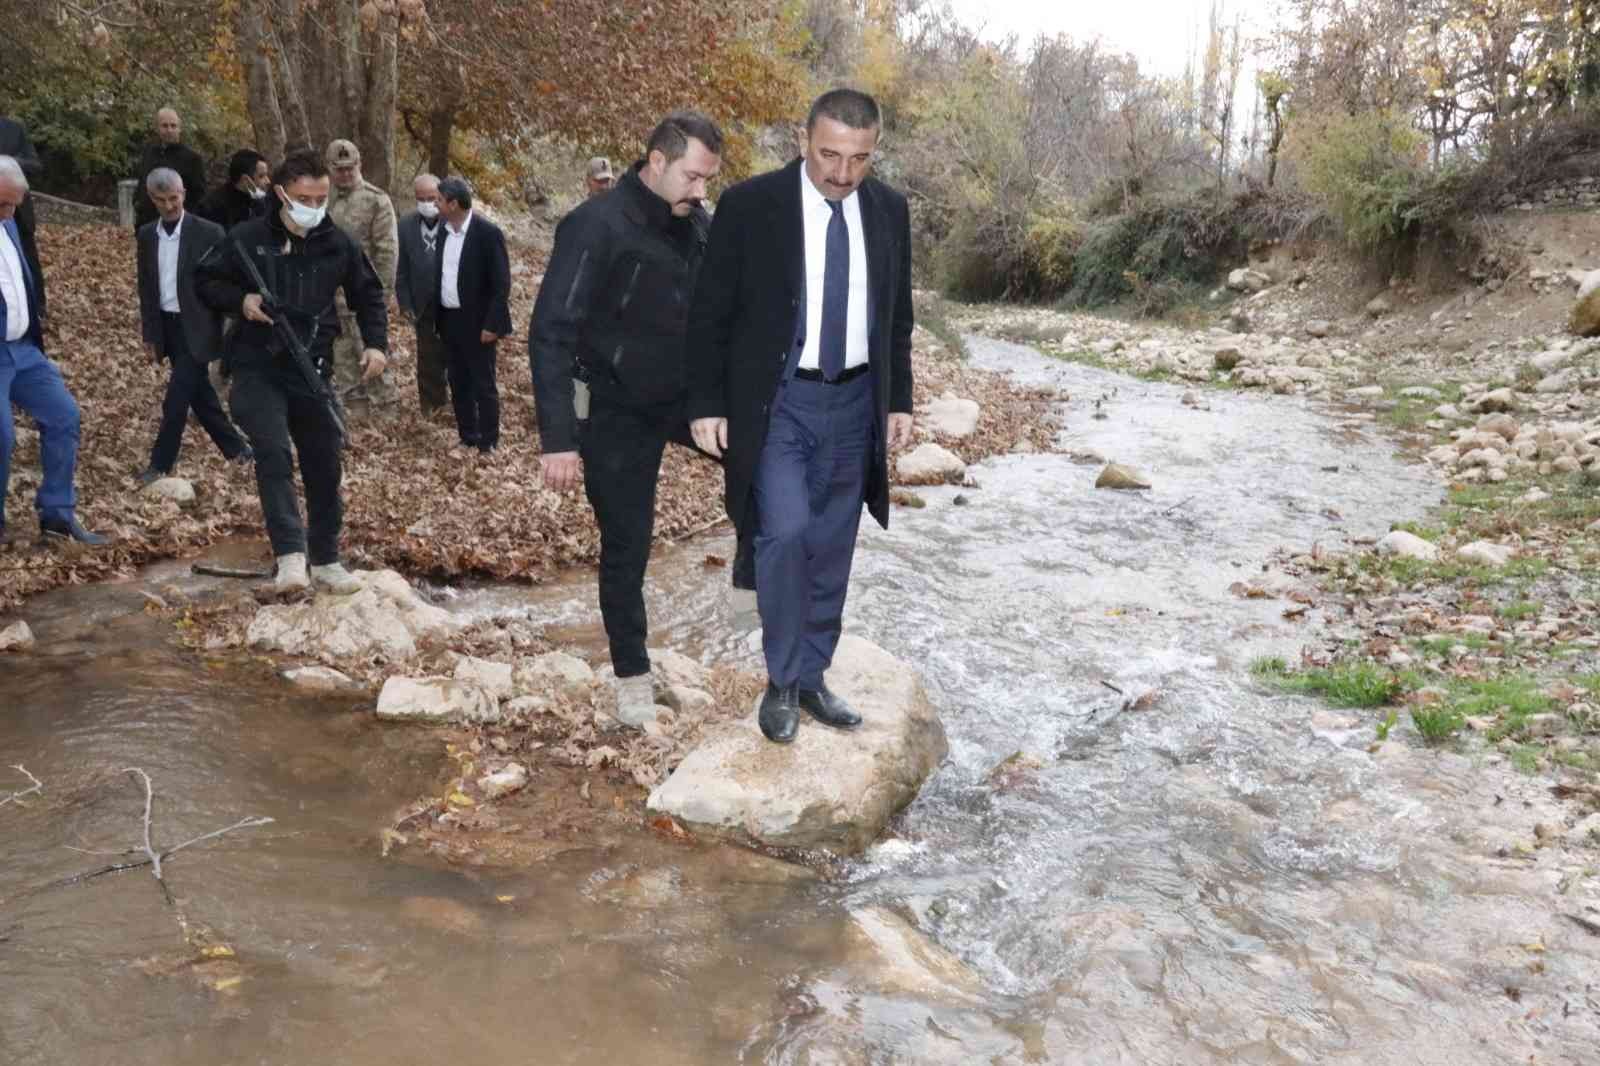 Siirt Valisi Hacıbektaşoğlu, yol sorununu yerinde inceledi #siirt